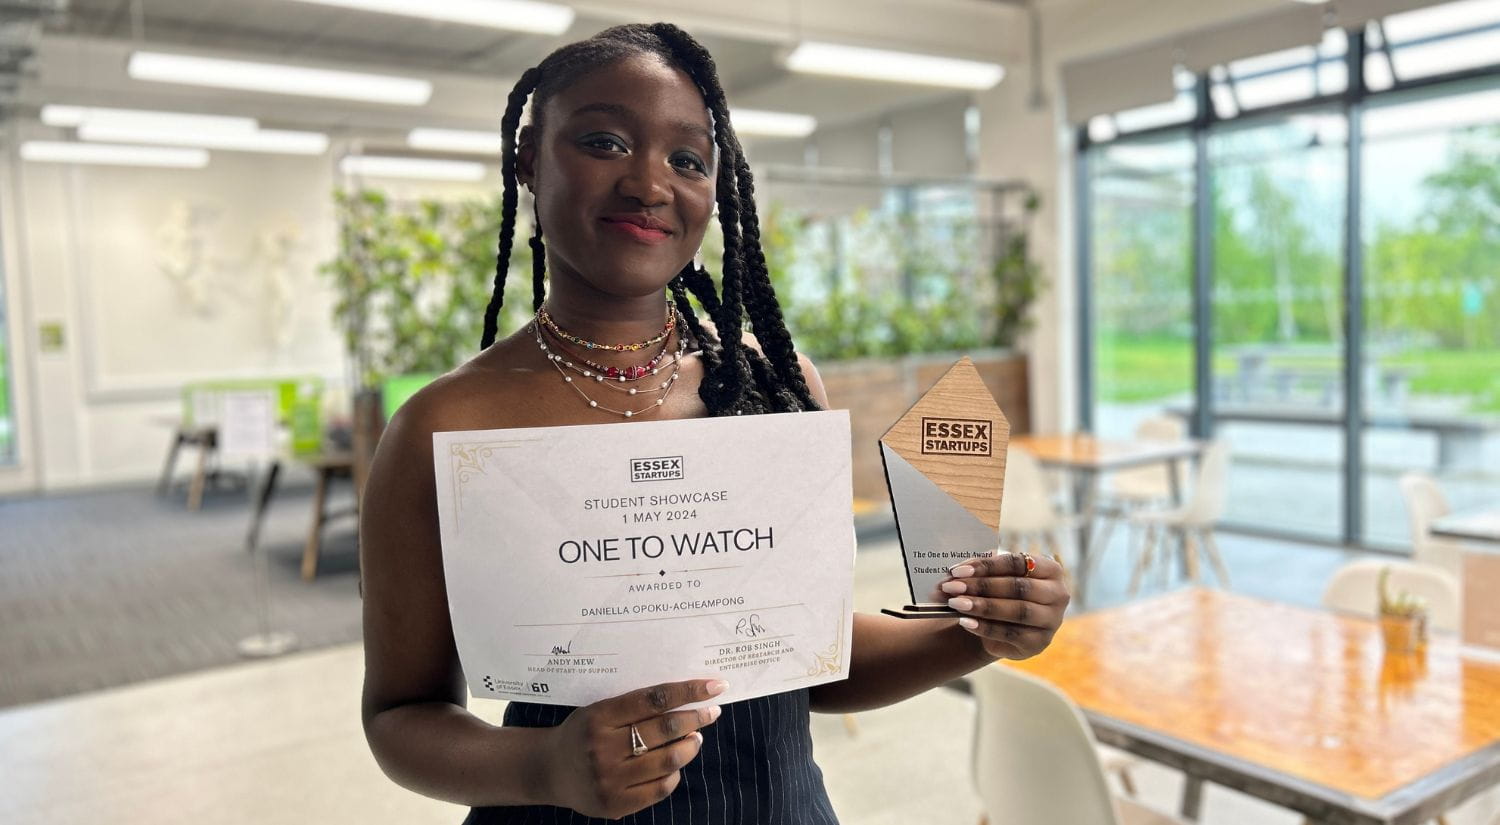 Daniella Opoku-Acheampong receiving a Essex Startups Award